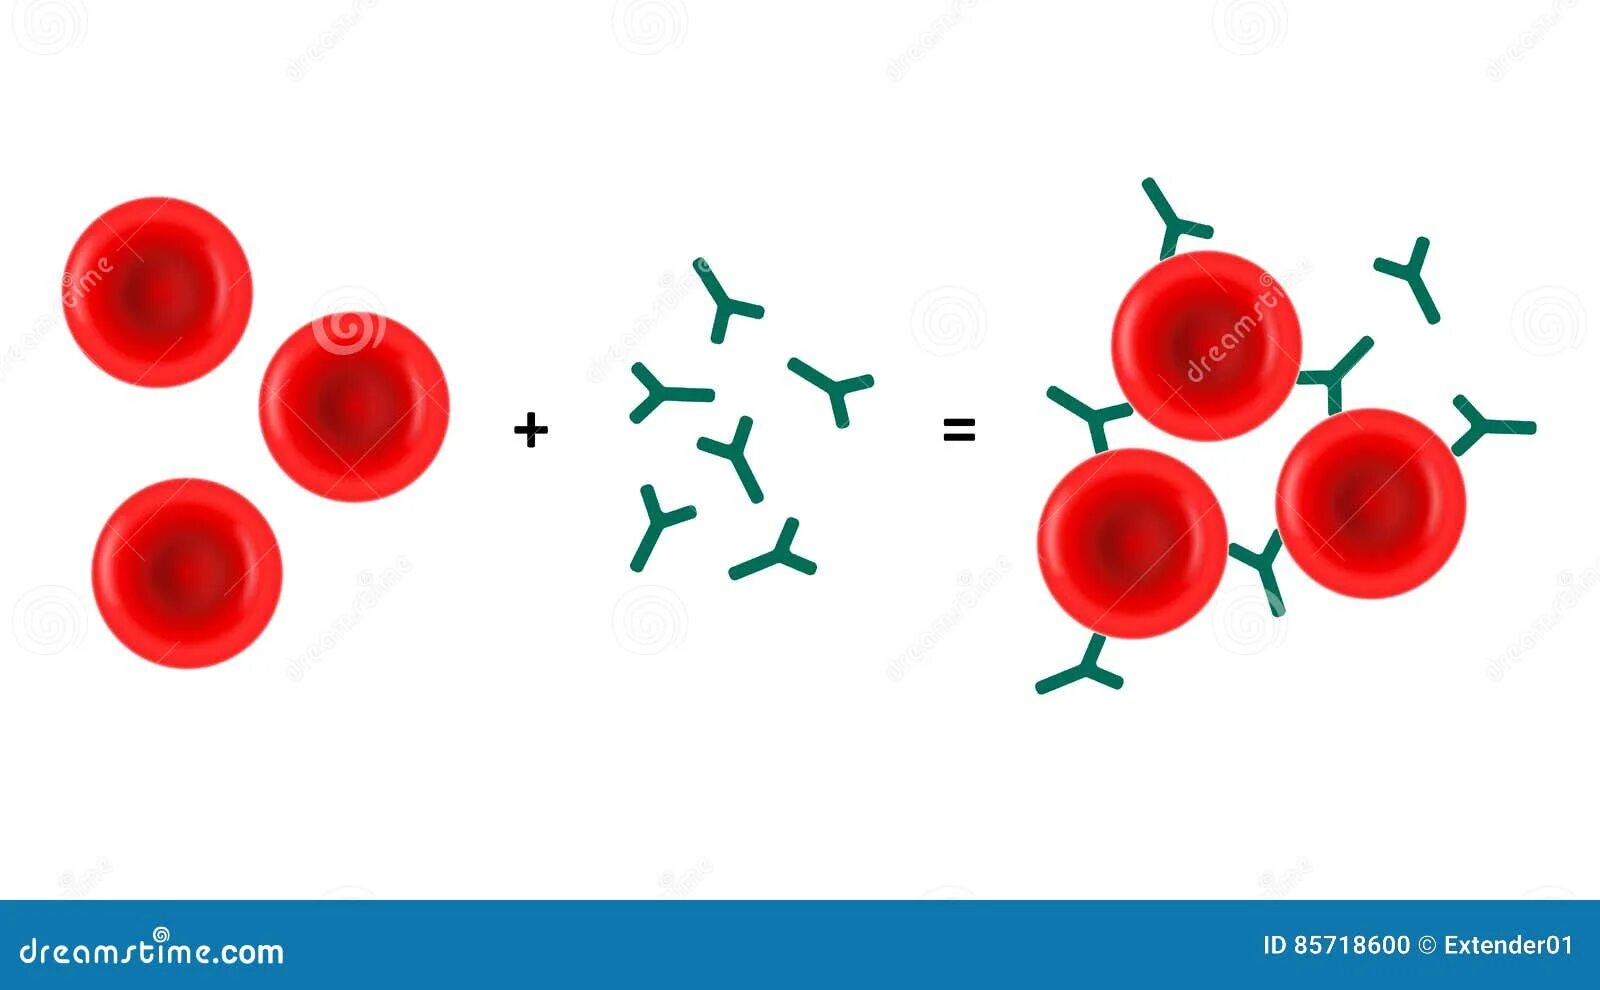 Реакция агглютинации эритроцитов. Антитела к эритроцитам. Клетки крови и антитела. Реакция латекс агглютинации рисунок. Эритроциты с антителами на них.